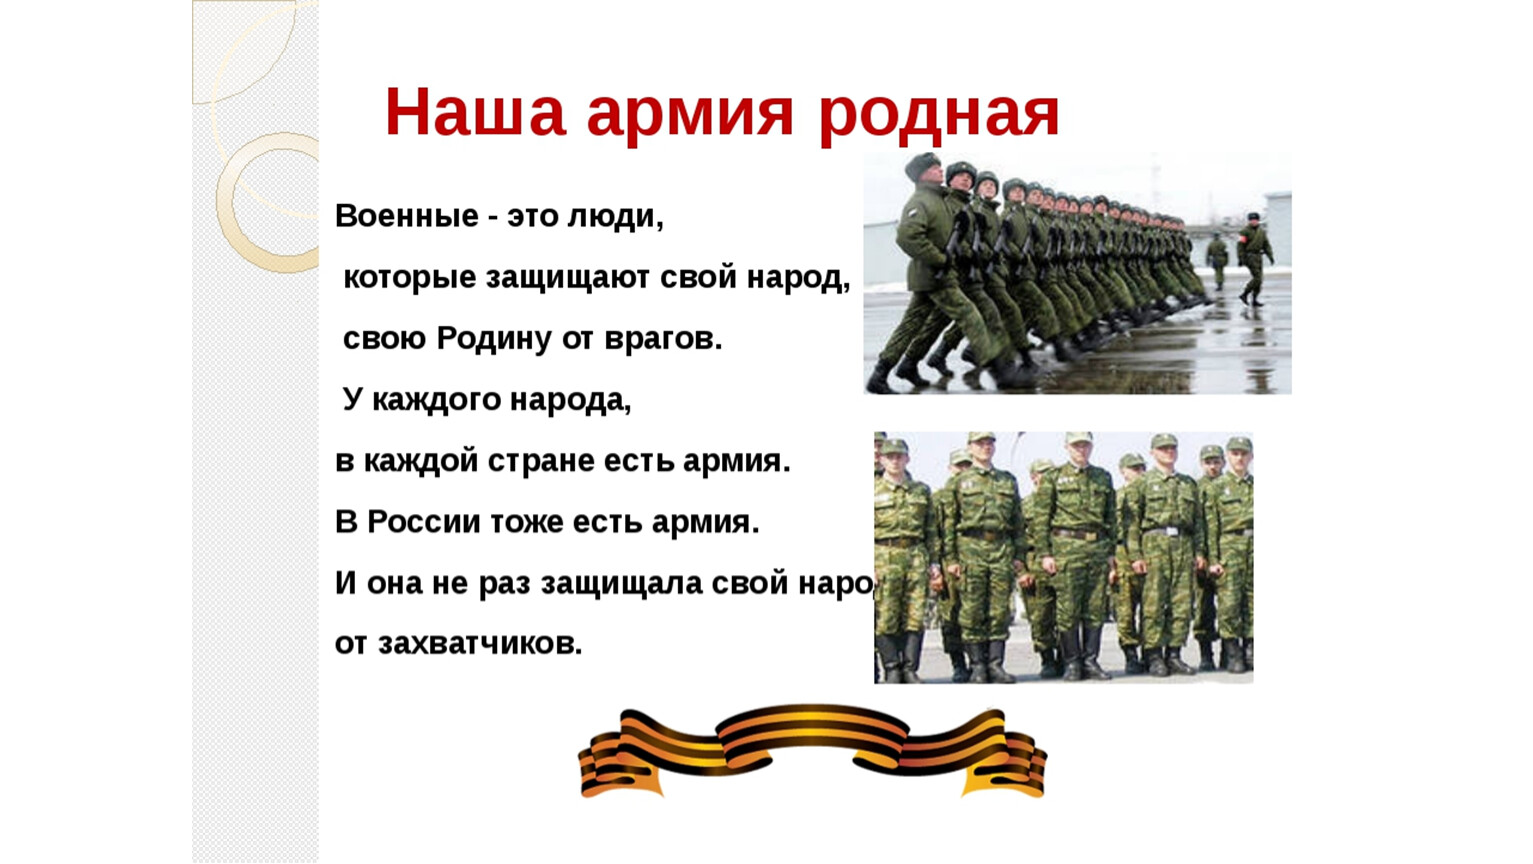 Проект окружающий мир 3 класс армия россии. Проект кто нас защищает армия. Проект армия. Проект кто нас защищает АРМИ. Проект ктотнас защищает армия.